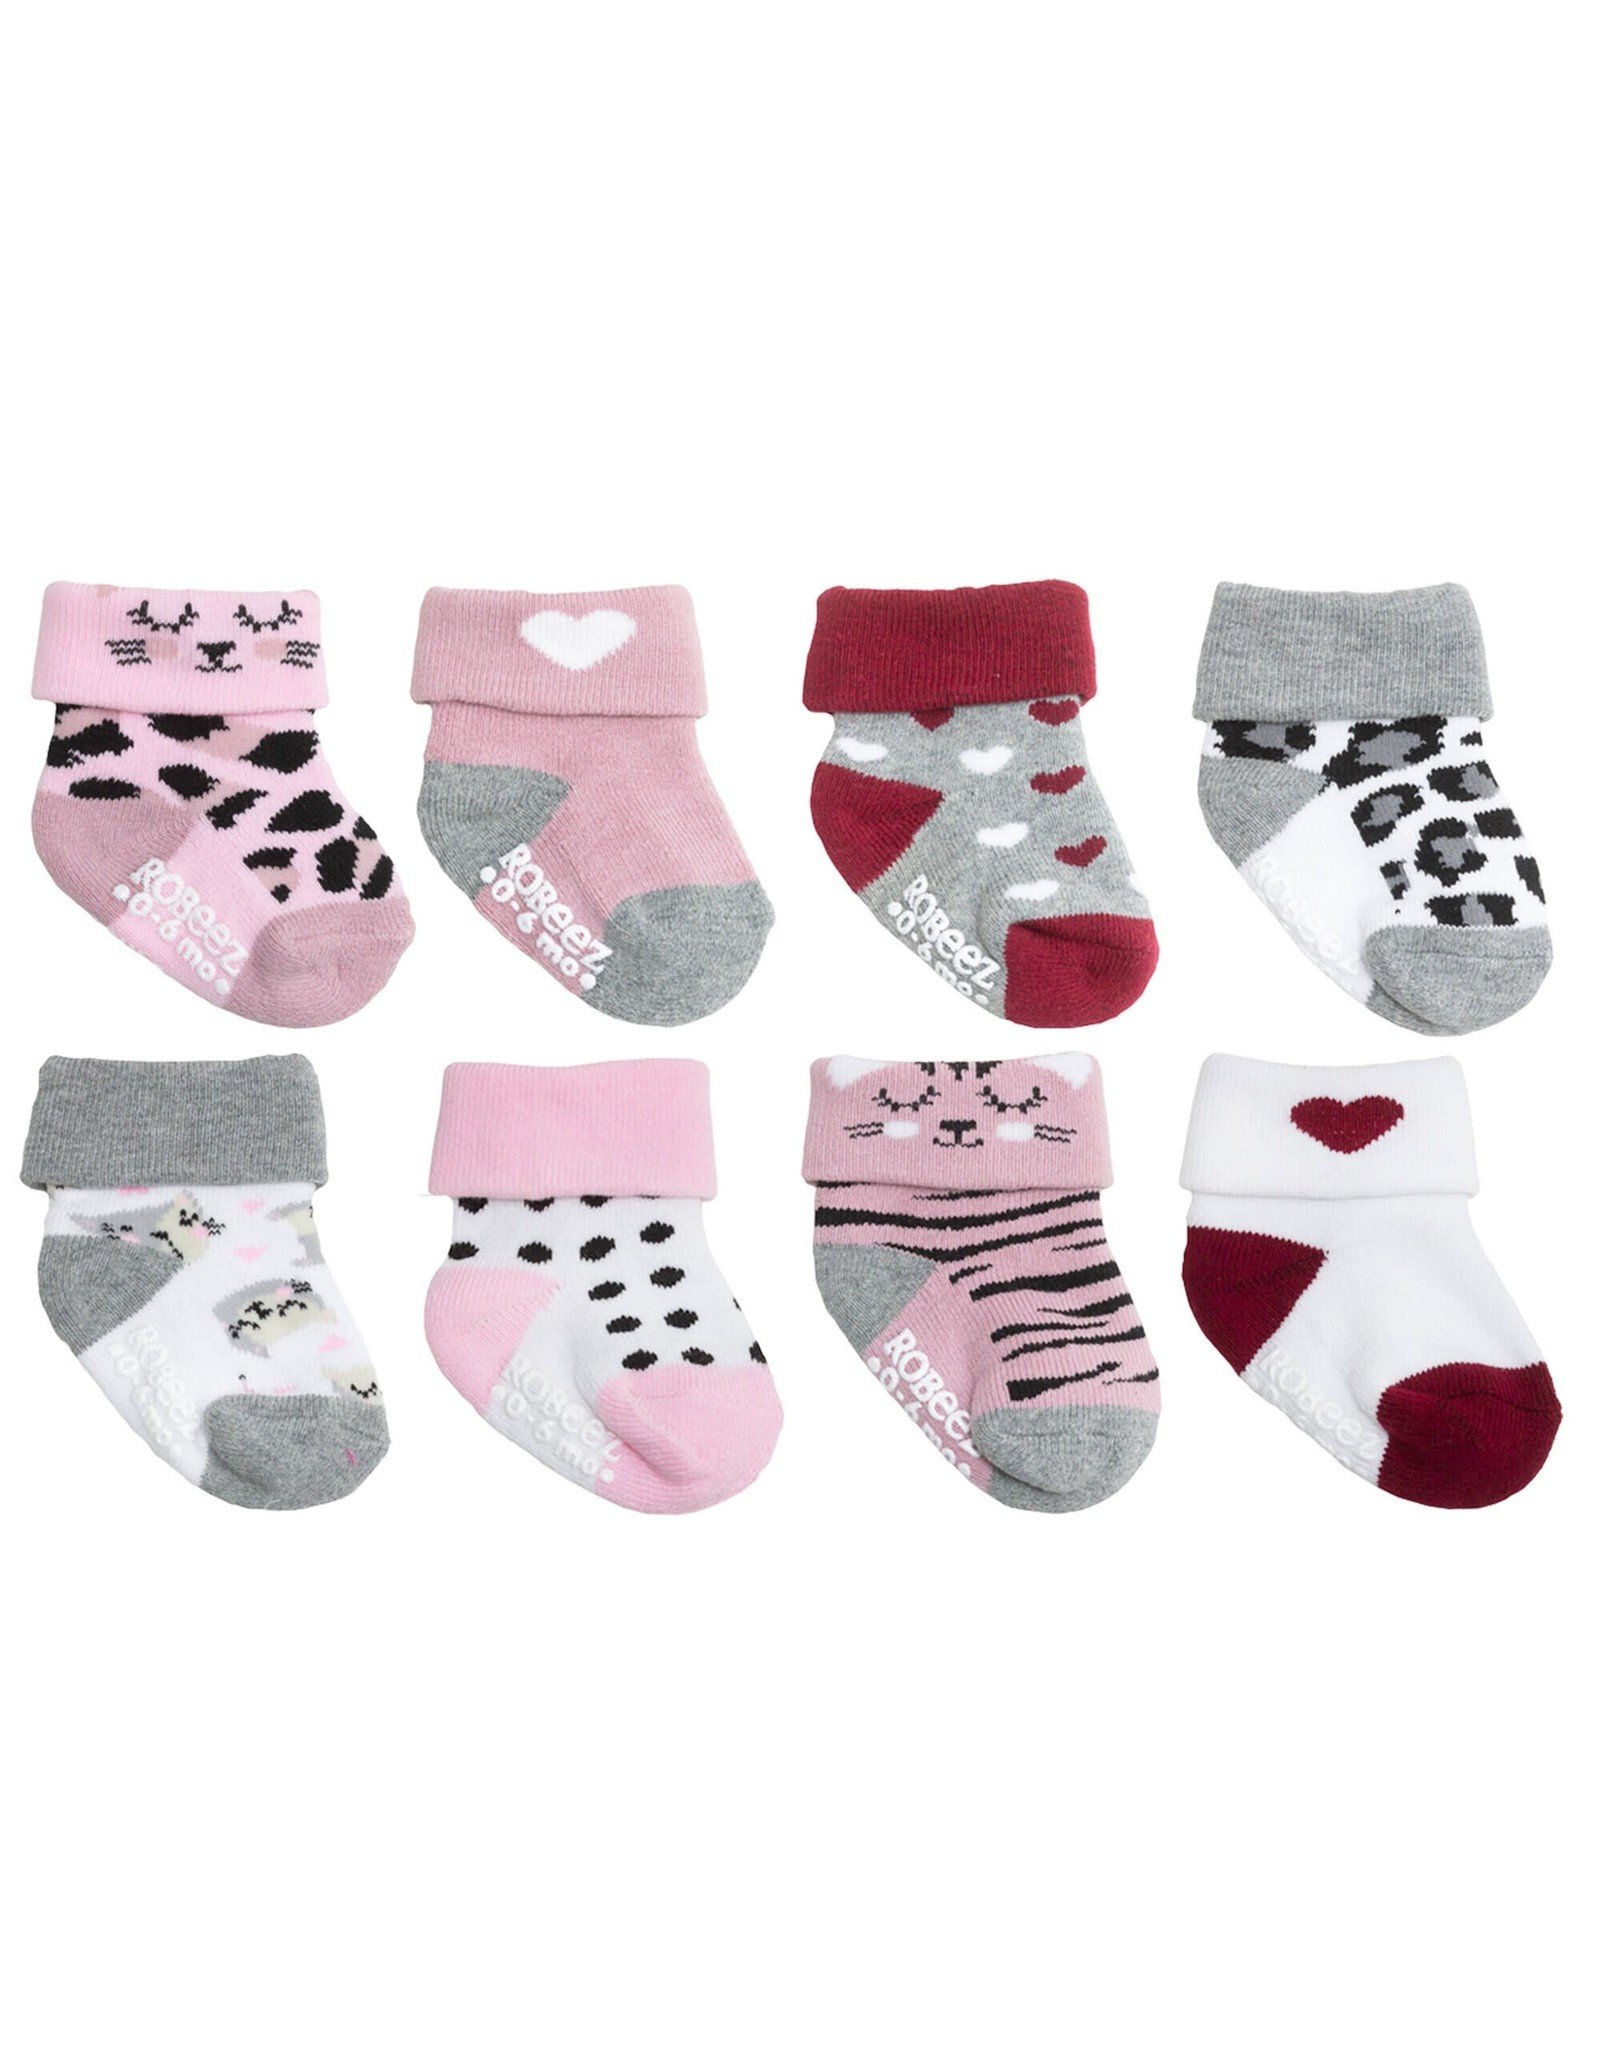 8 pack infant socks- Little kitty 6-12M